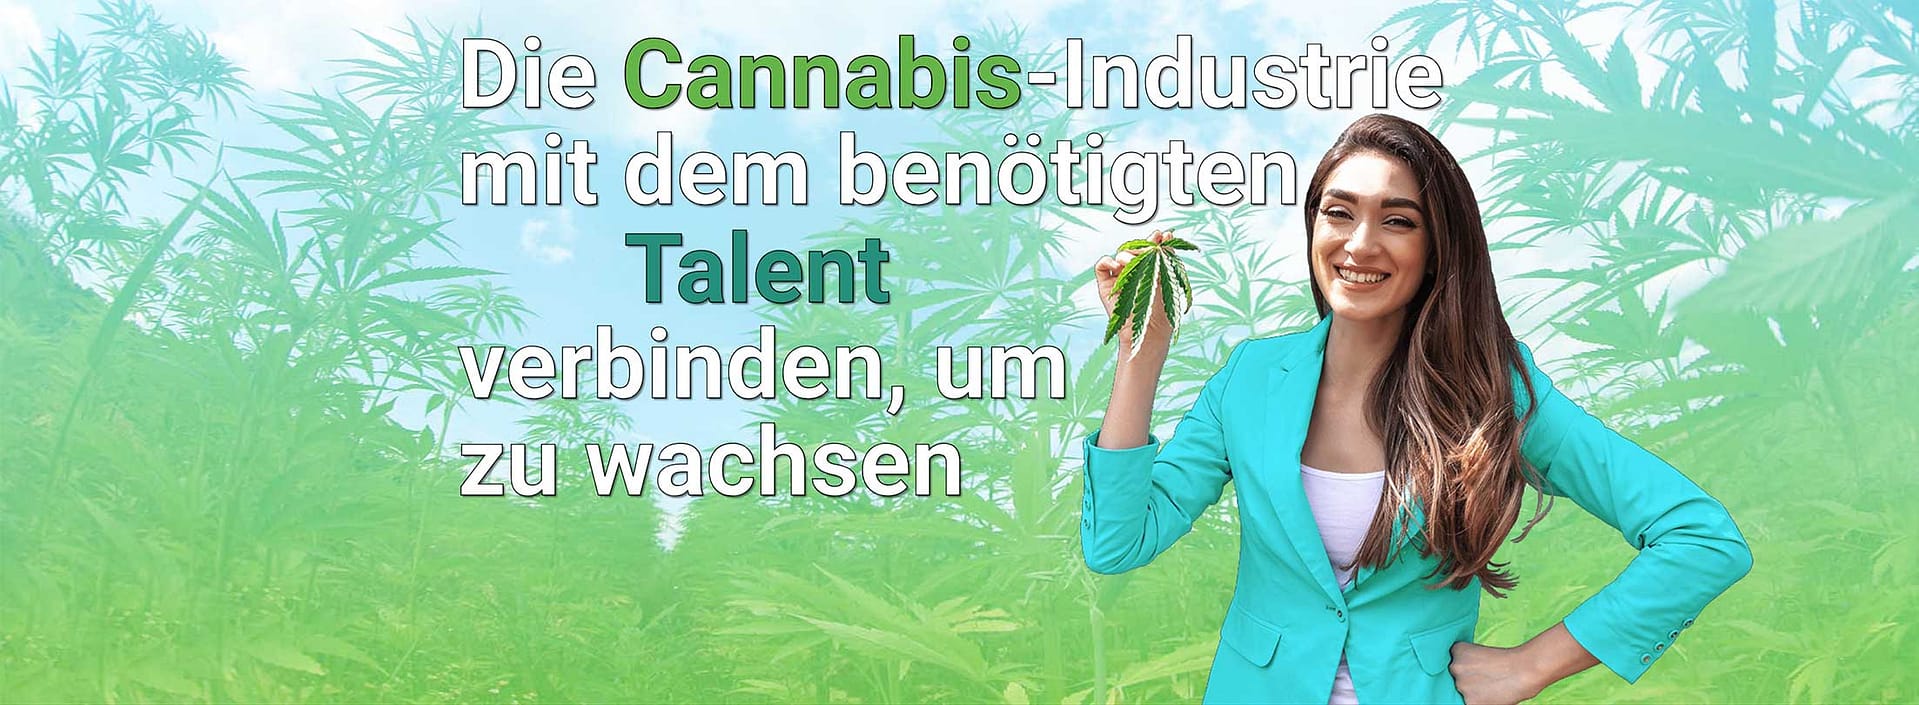 Die Cannabis-Industrie mit dem benötigten Talent verbinden, um zu wachsen